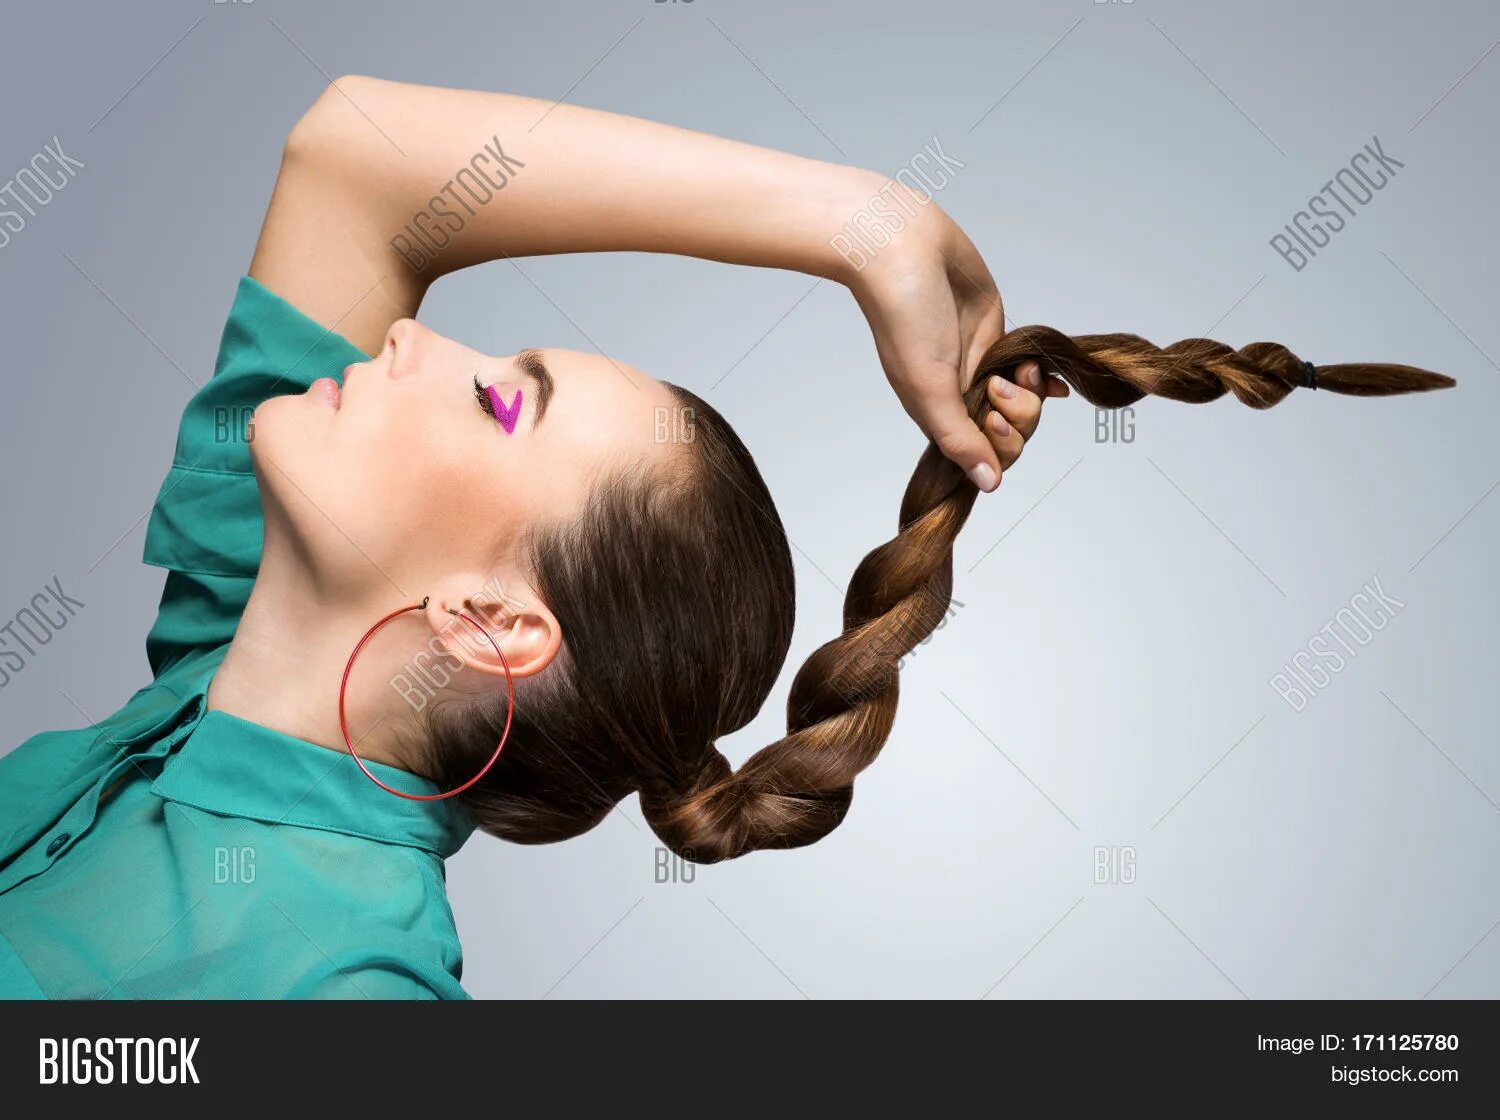 Коса держится. Девушка держит косу. Держит за косу. Девушка держит косички. Рука держит косу.